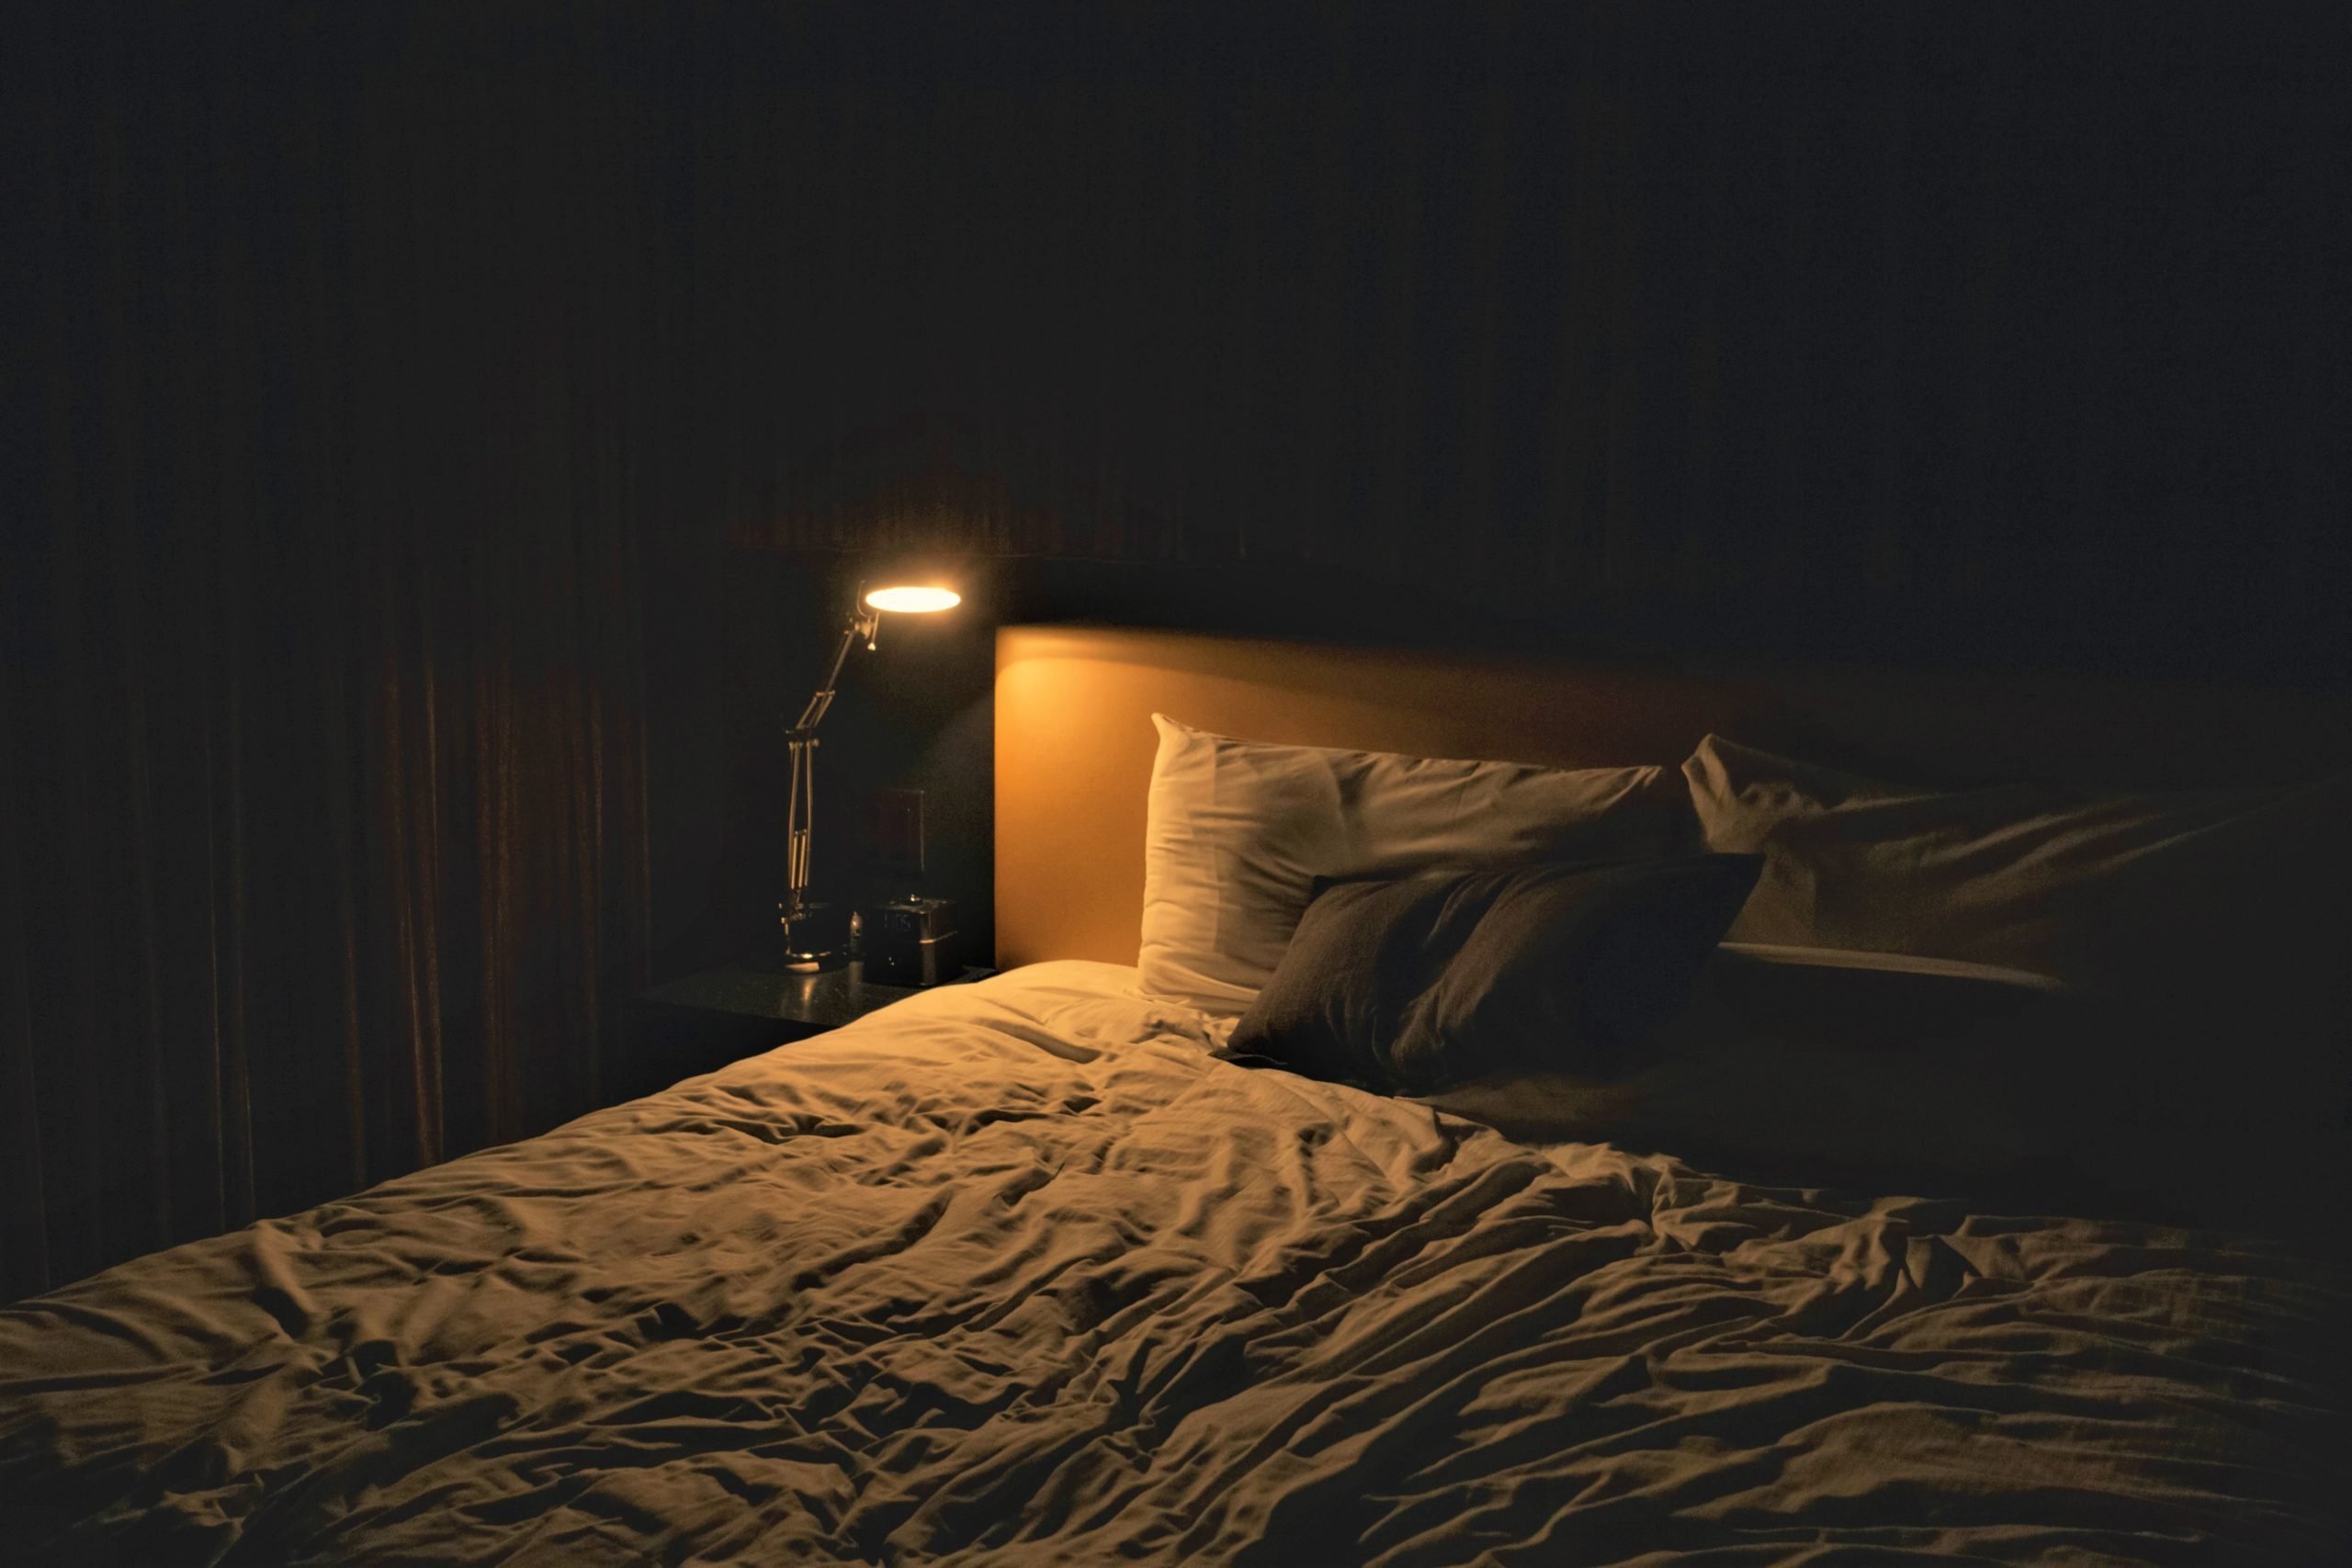 Кровать ночью. Комната с кроватью в темноте. Комната с кроватью ночью. Тесная комната с крлватью.